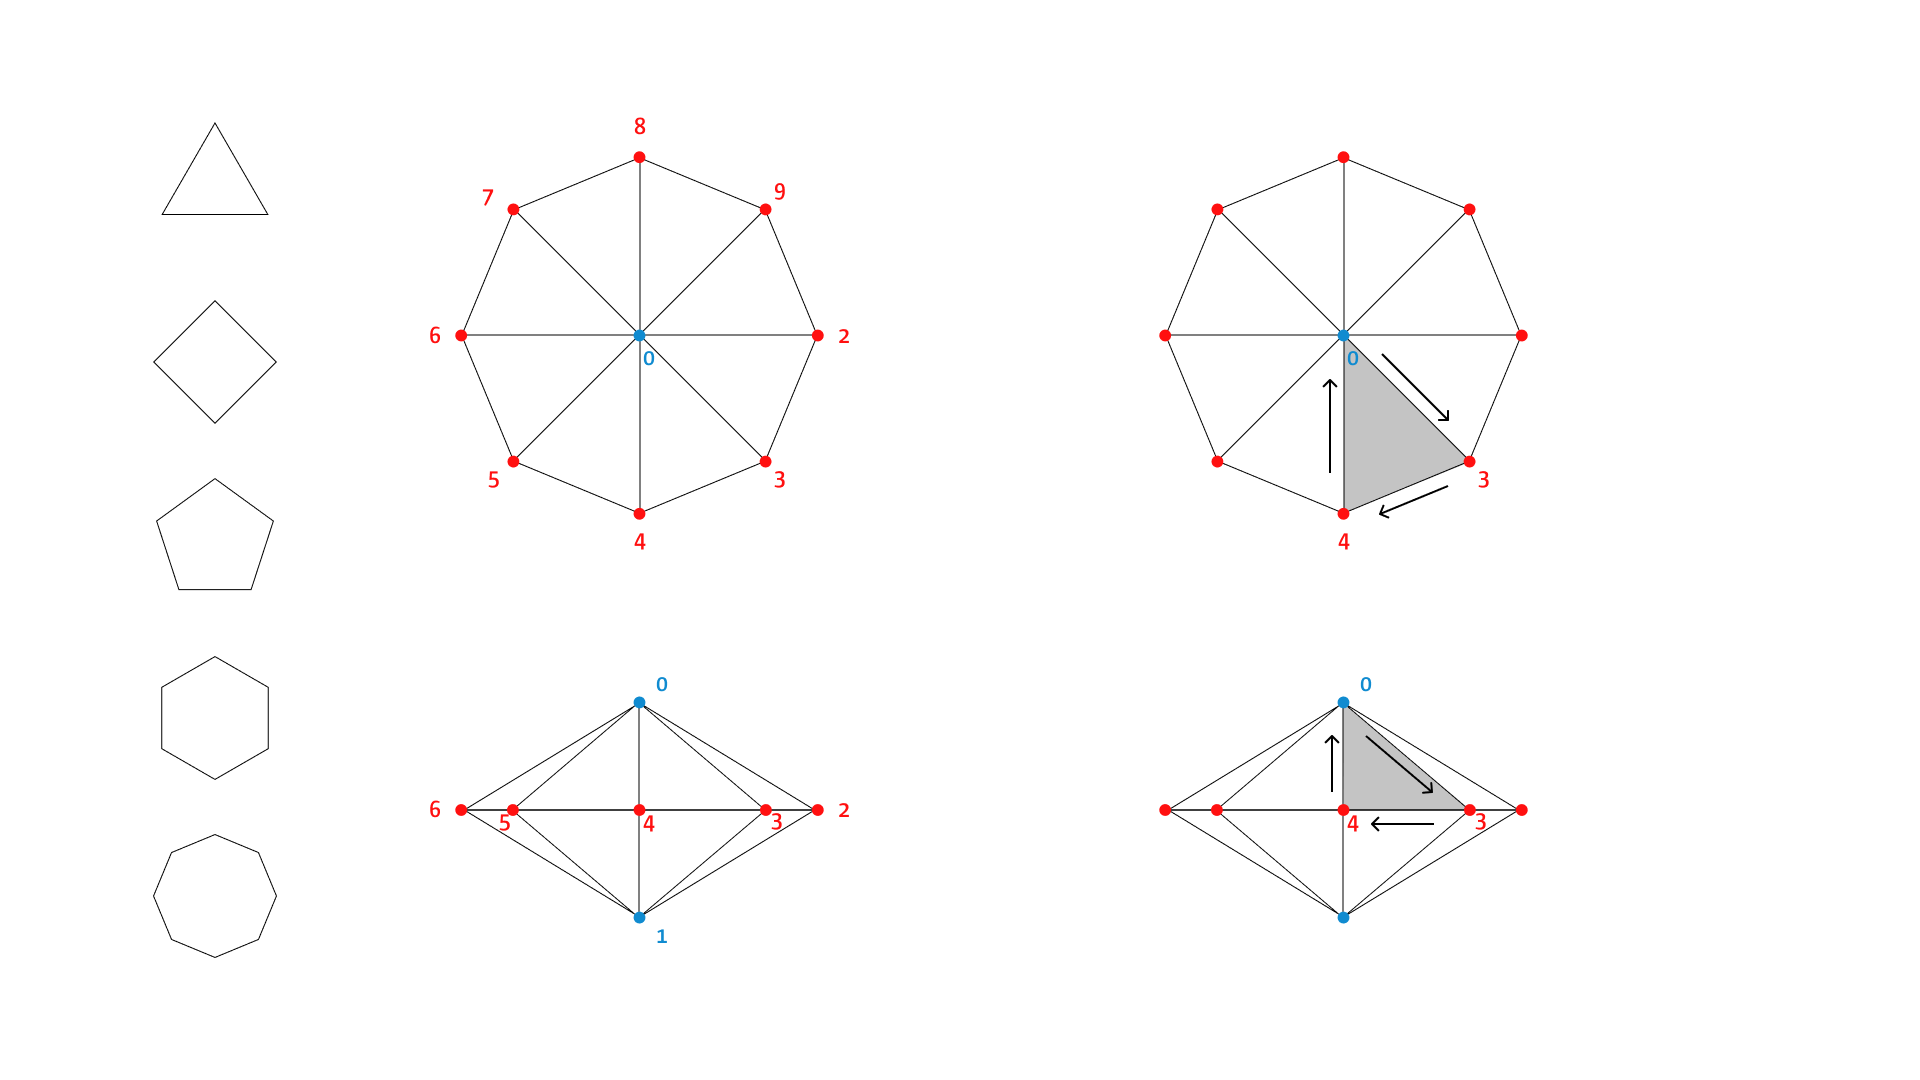 Konstruktion der Punkte (Vertices) und Dreiecke (Faces)